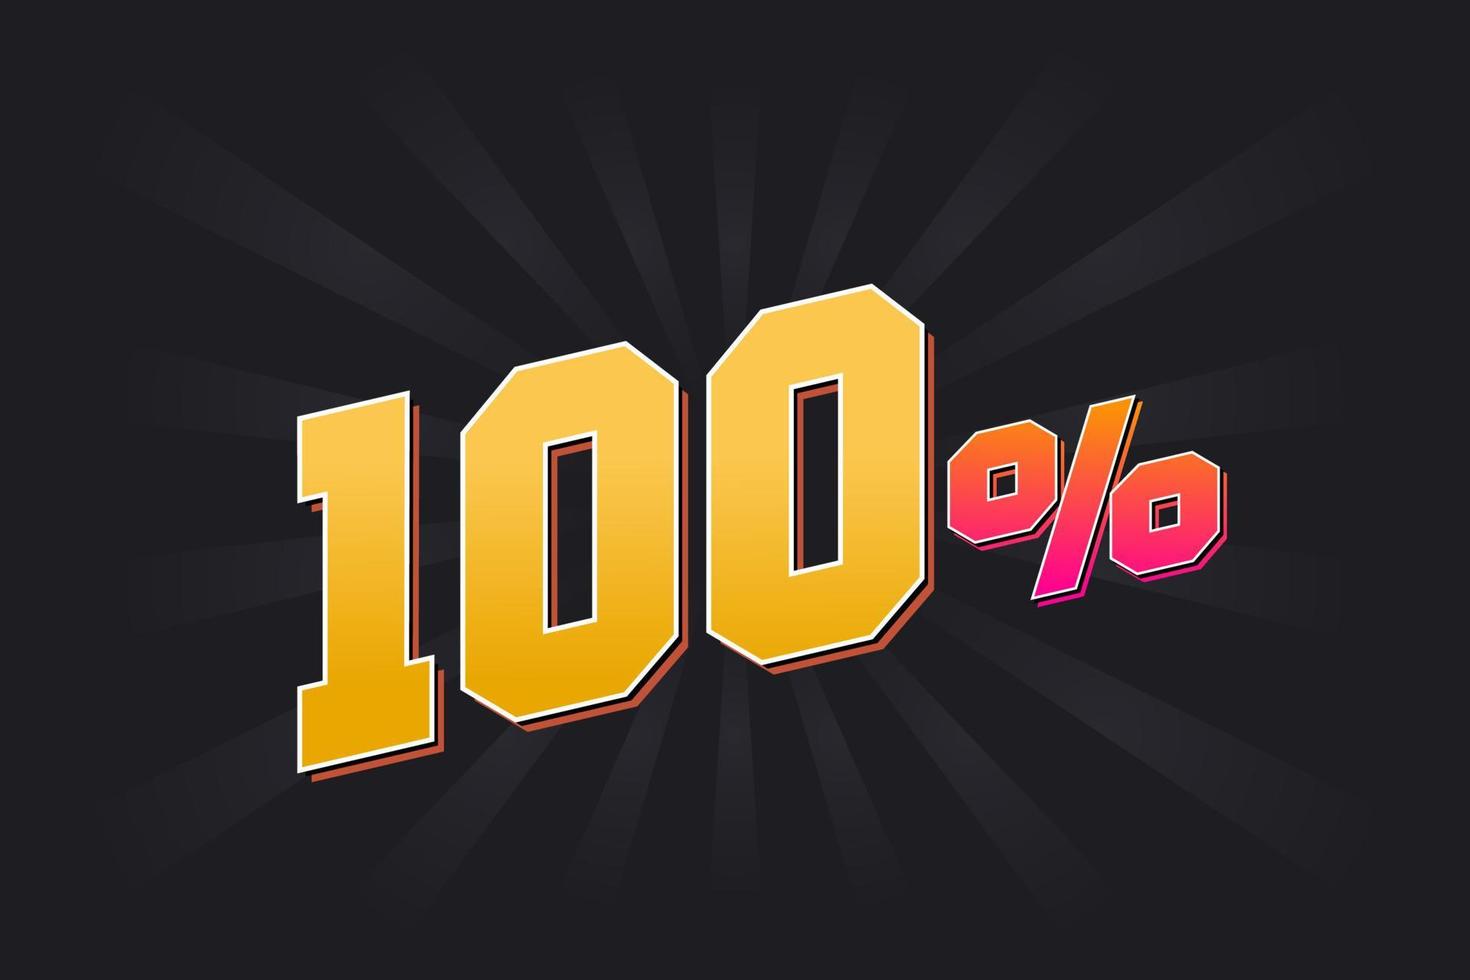 100 banner de descuento con fondo oscuro y texto amarillo. 100 por ciento de diseño promocional de ventas. vector